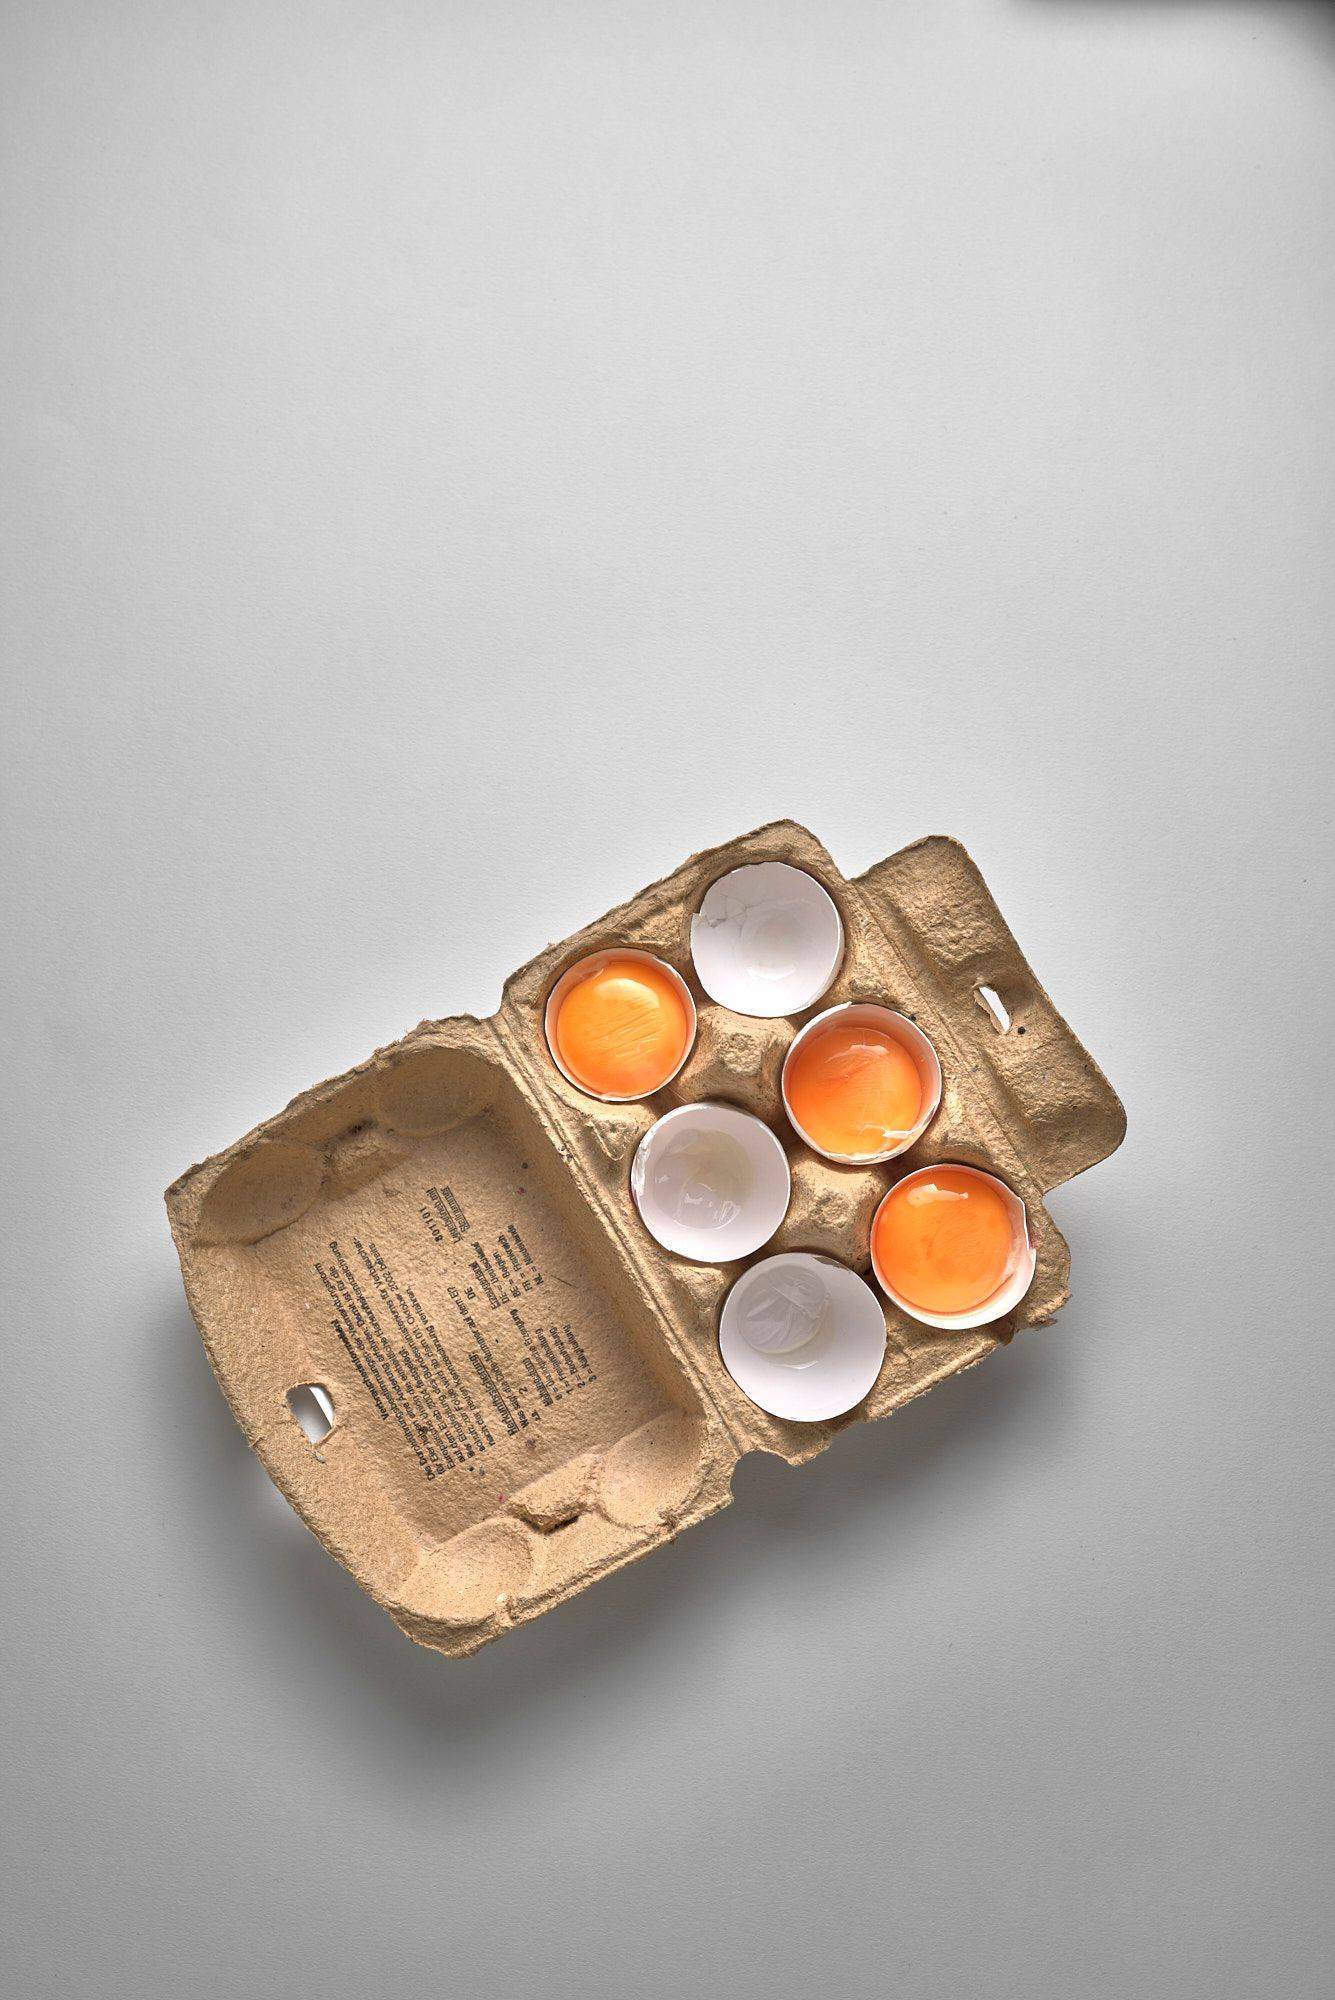 drei aufgeschlagene eier in einem eierkarton auf weißem hintergrund